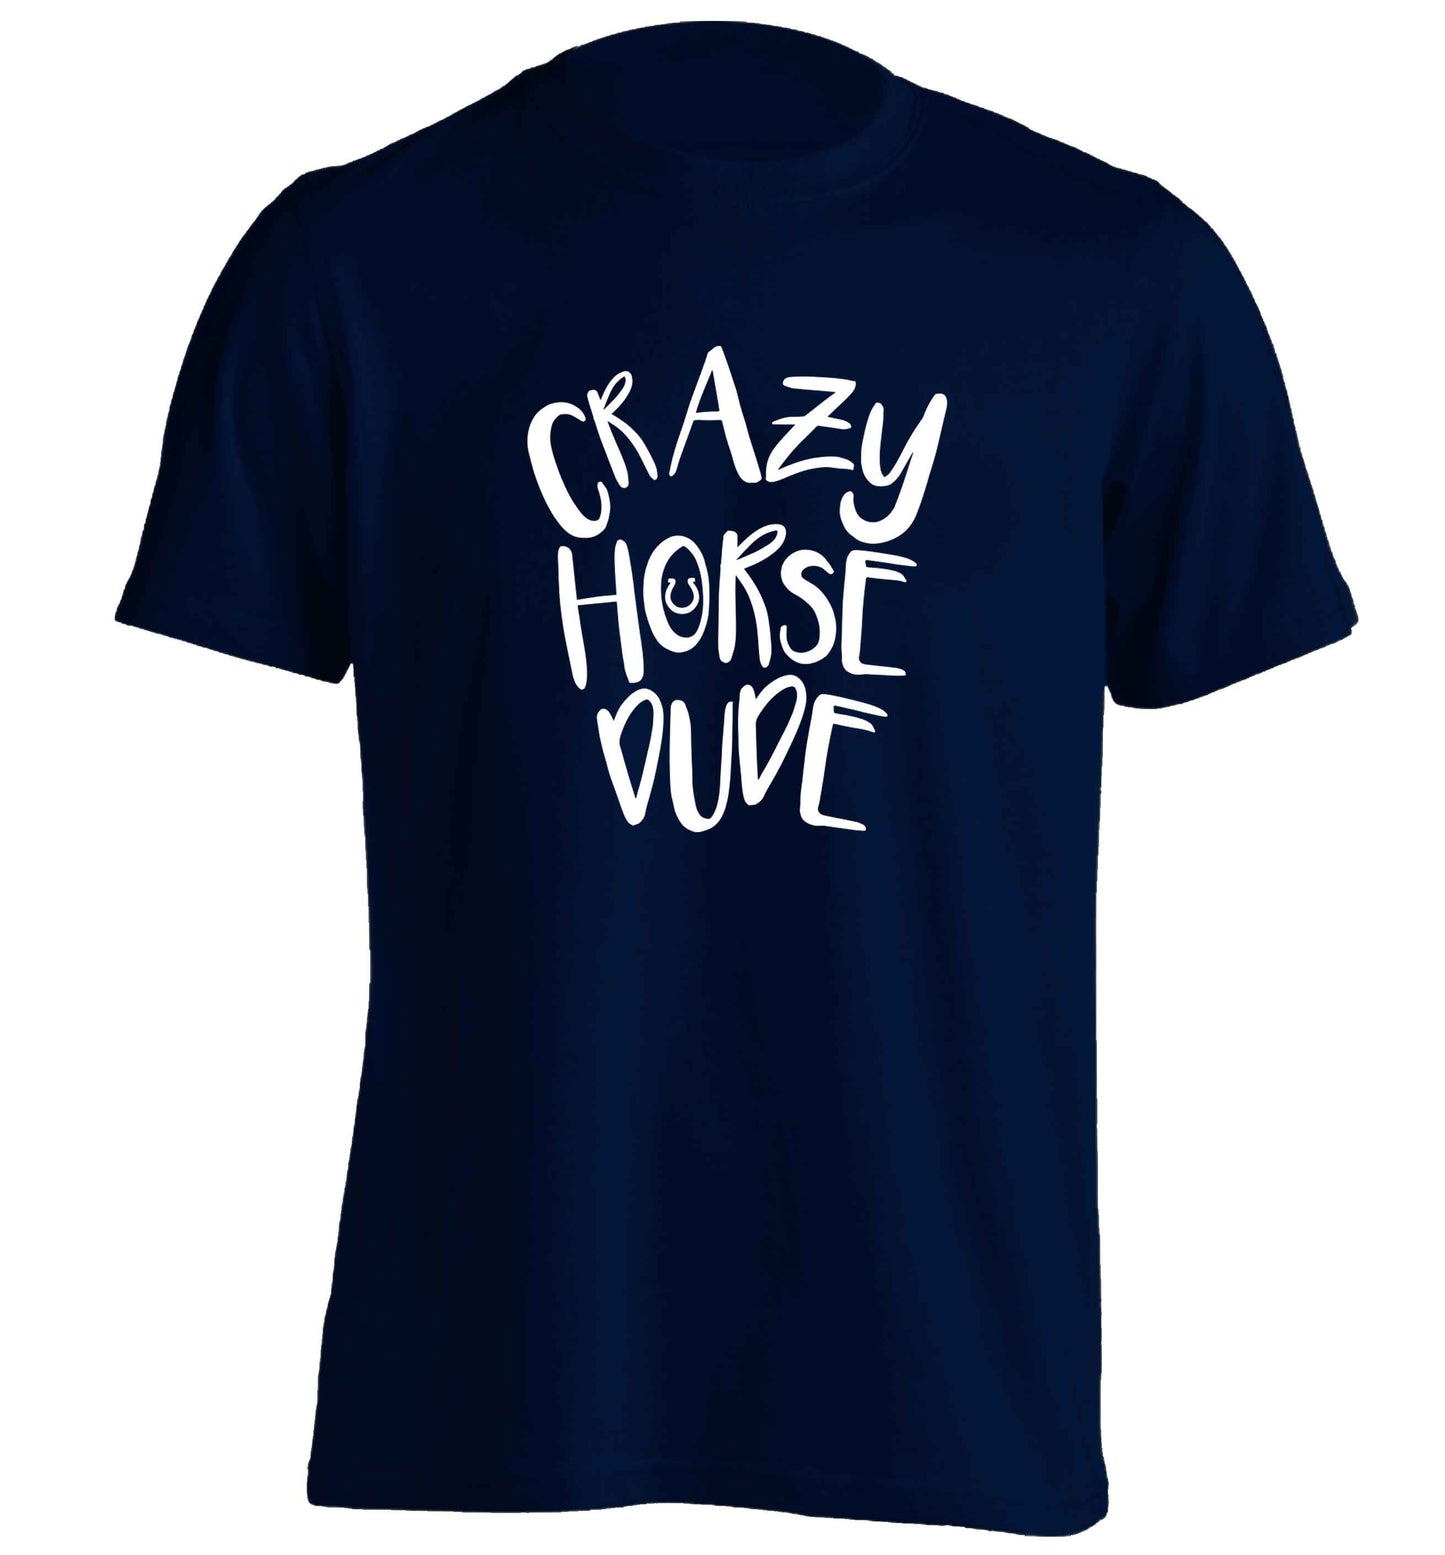 Crazy horse dude adults unisex navy Tshirt 2XL